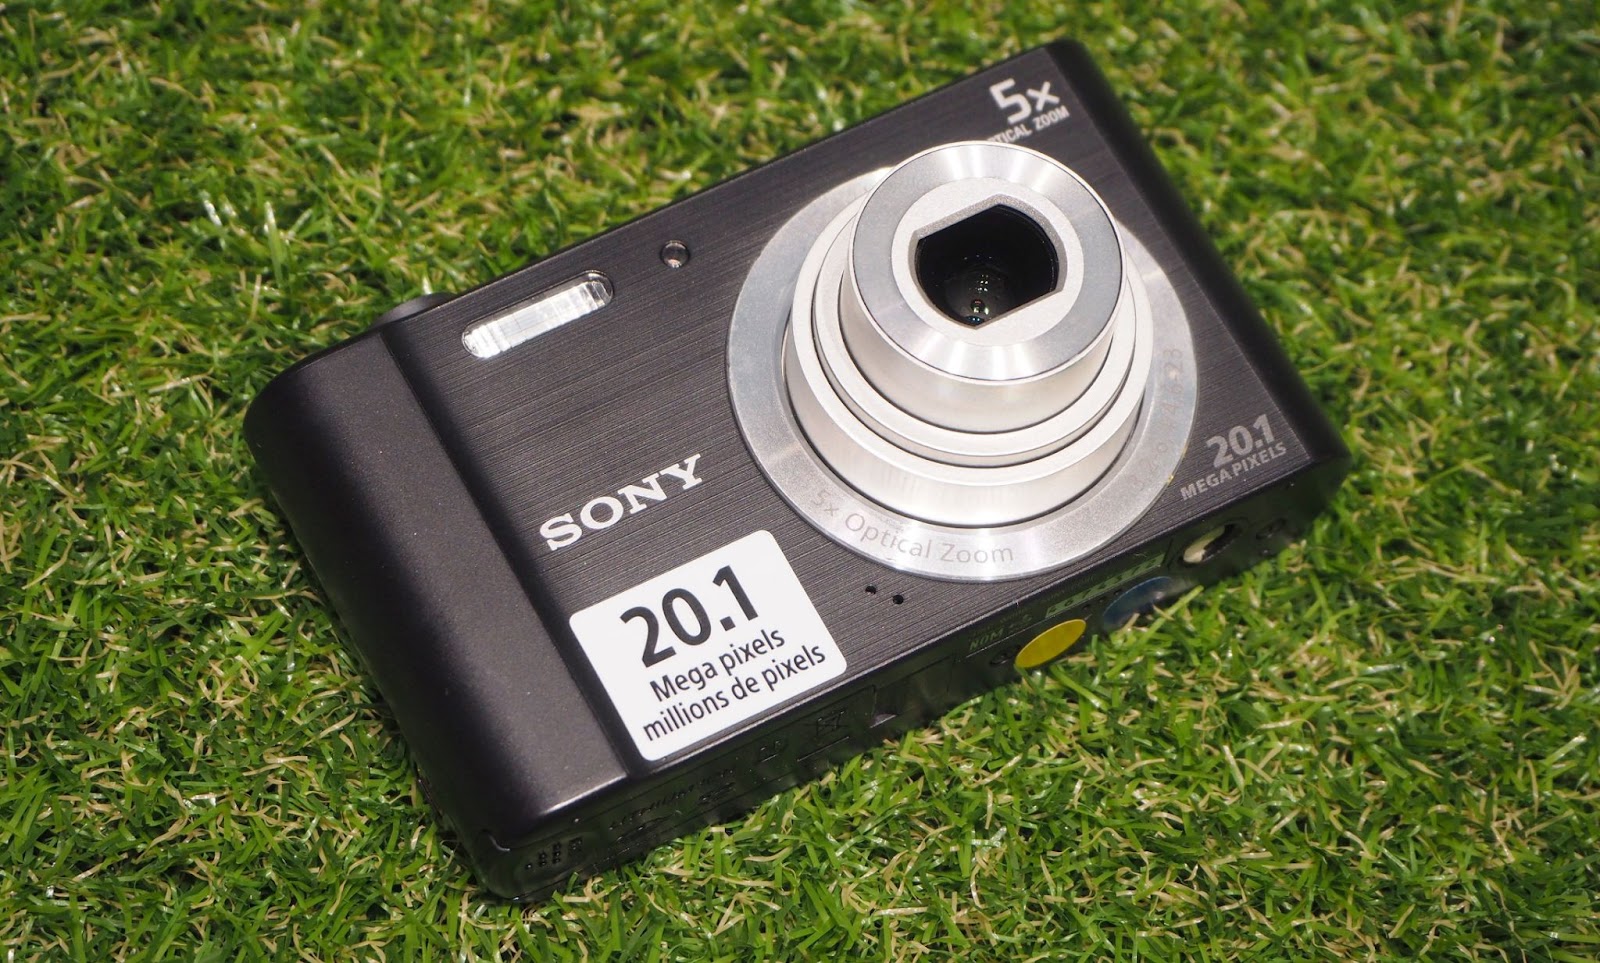 سوني سايبر شوت W800: كاميرا مدمجة للمبتدئين